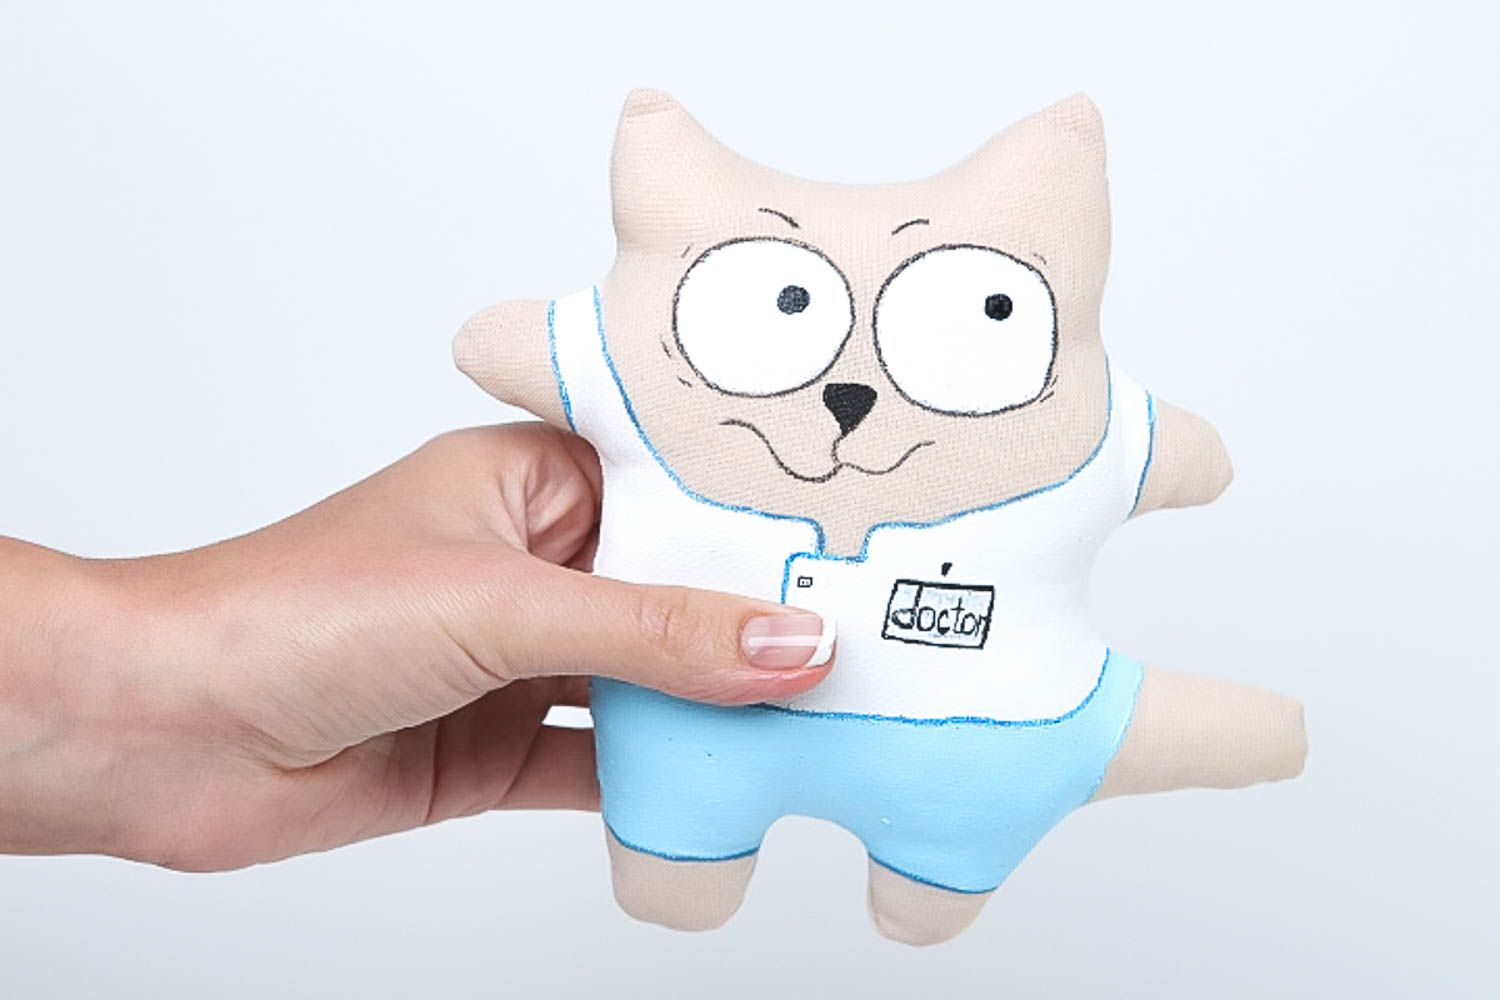 Handmade Deko Katze Stofftier Geschenk Idee ausgefallenes Spielzeug stilvoll foto 5